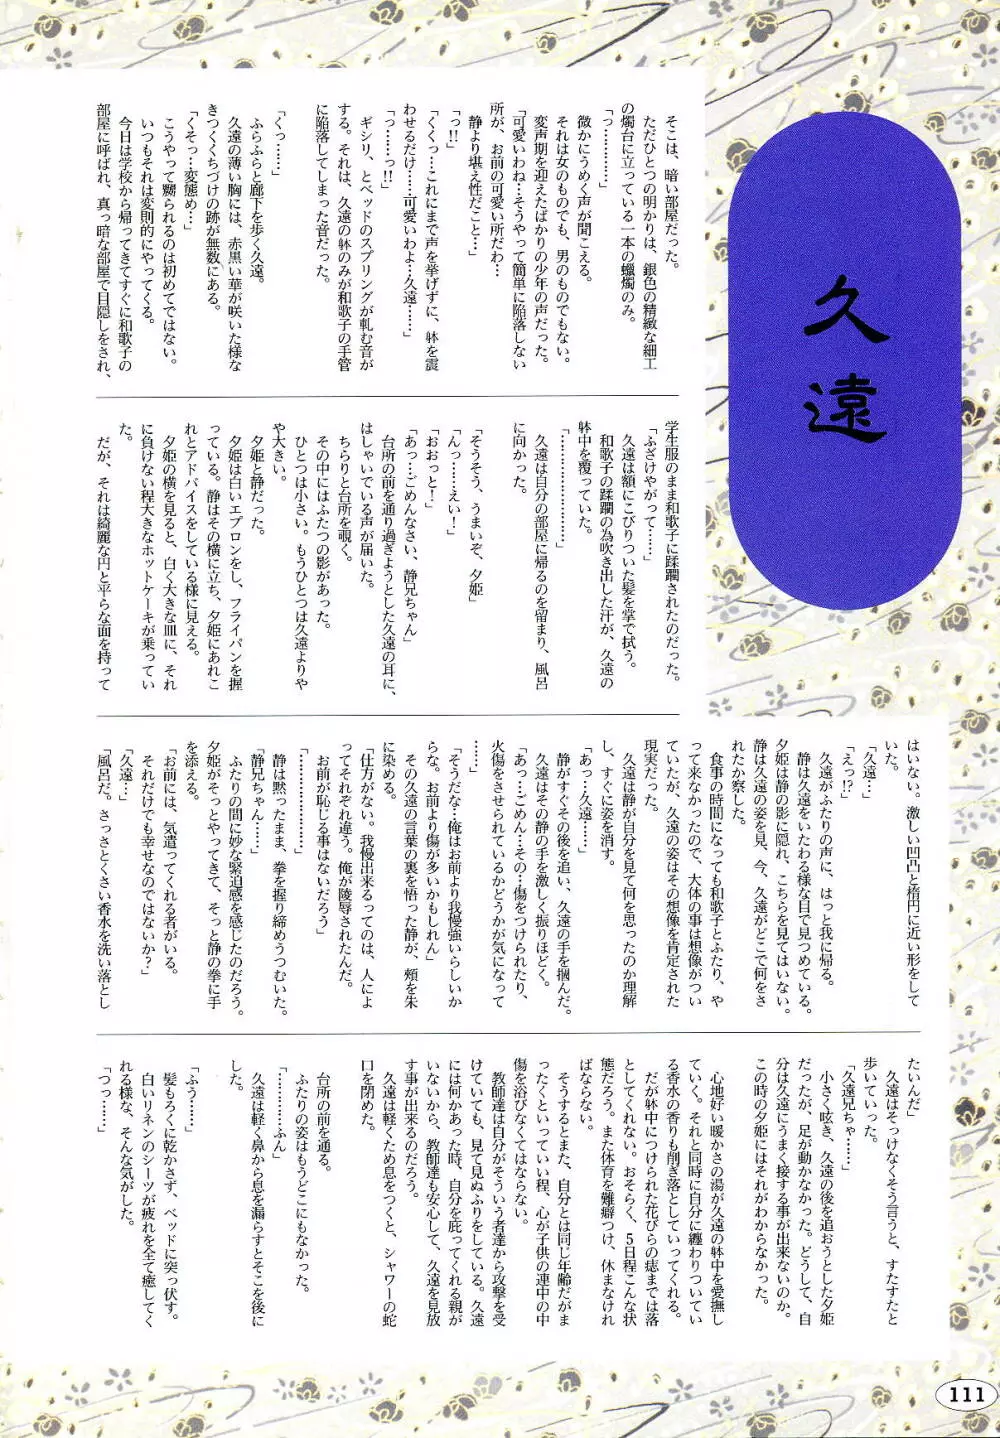 [ALICE SOFT][950707] 夢幻泡影 (一般画集) [アリスソフト] 夢幻泡影 原画&設定資料集 114ページ